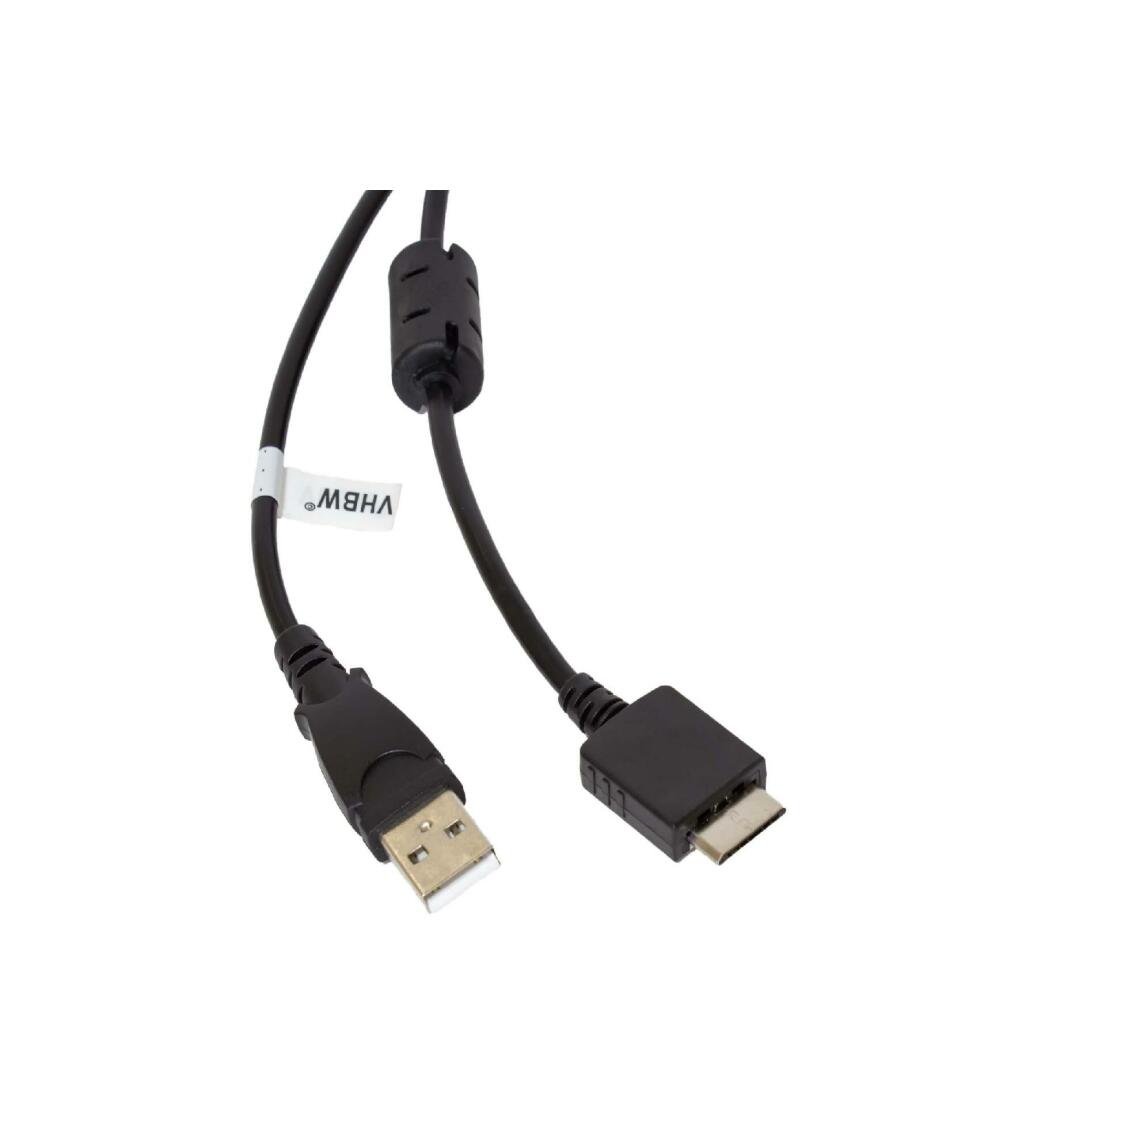 Vhbw - vhbw câble de données USB (type A sur lecteur MP3) câble de chargement compatible avec Sony Walkman NWZ-E575B, NWZ-E584 lecteur MP3 - noir, 150cm - Alimentation modulaire